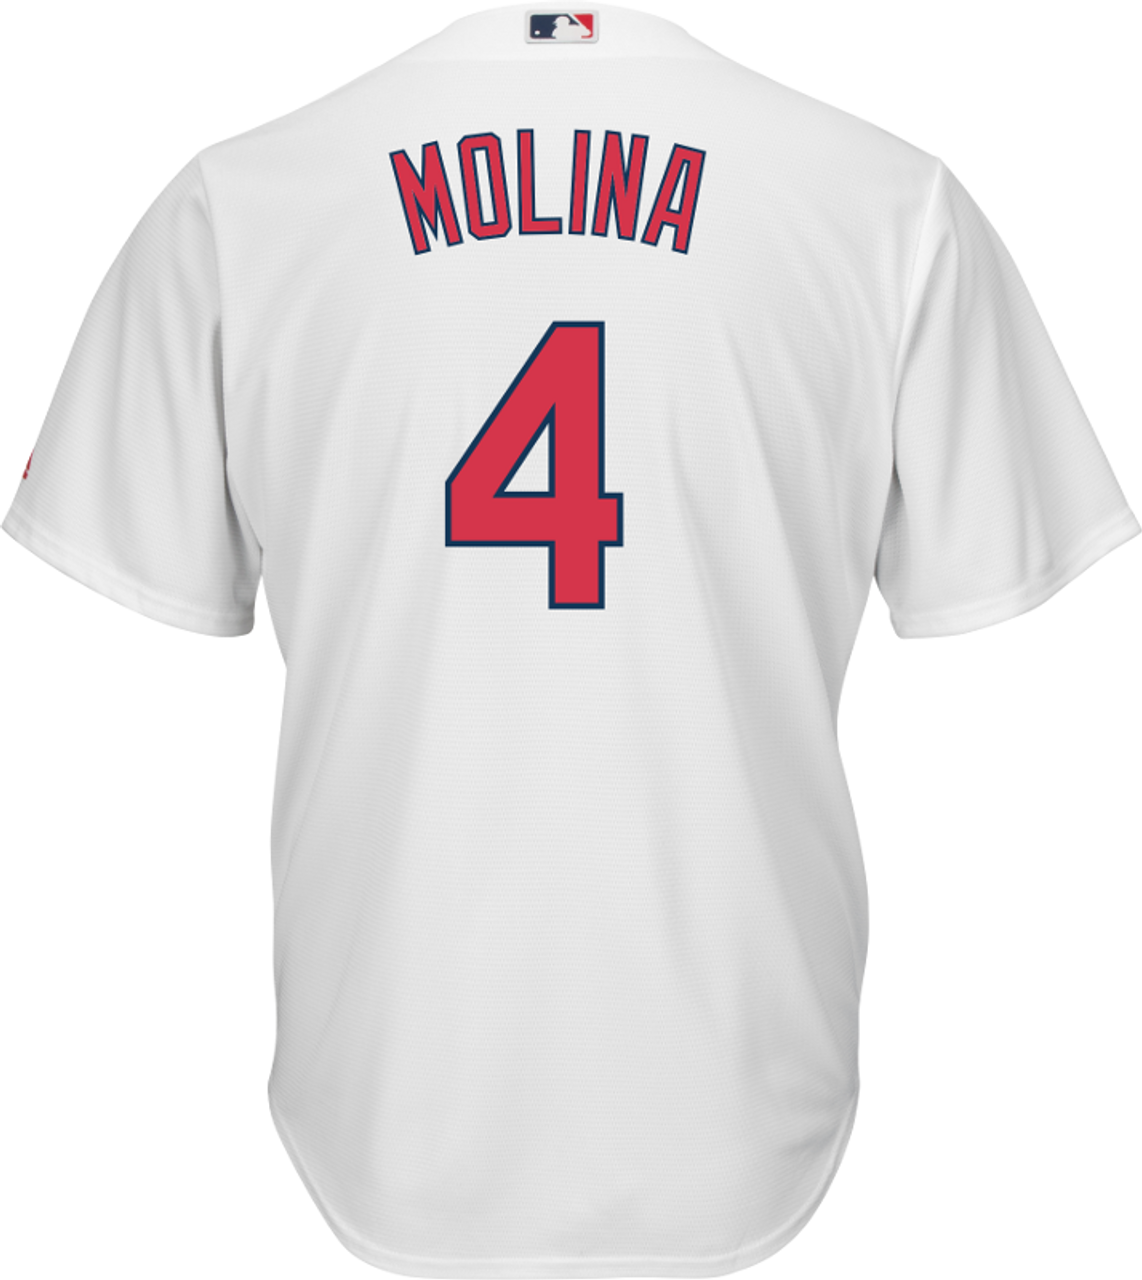 Yadier Molina St. Louis Cardinals baseball player Vintage shirt